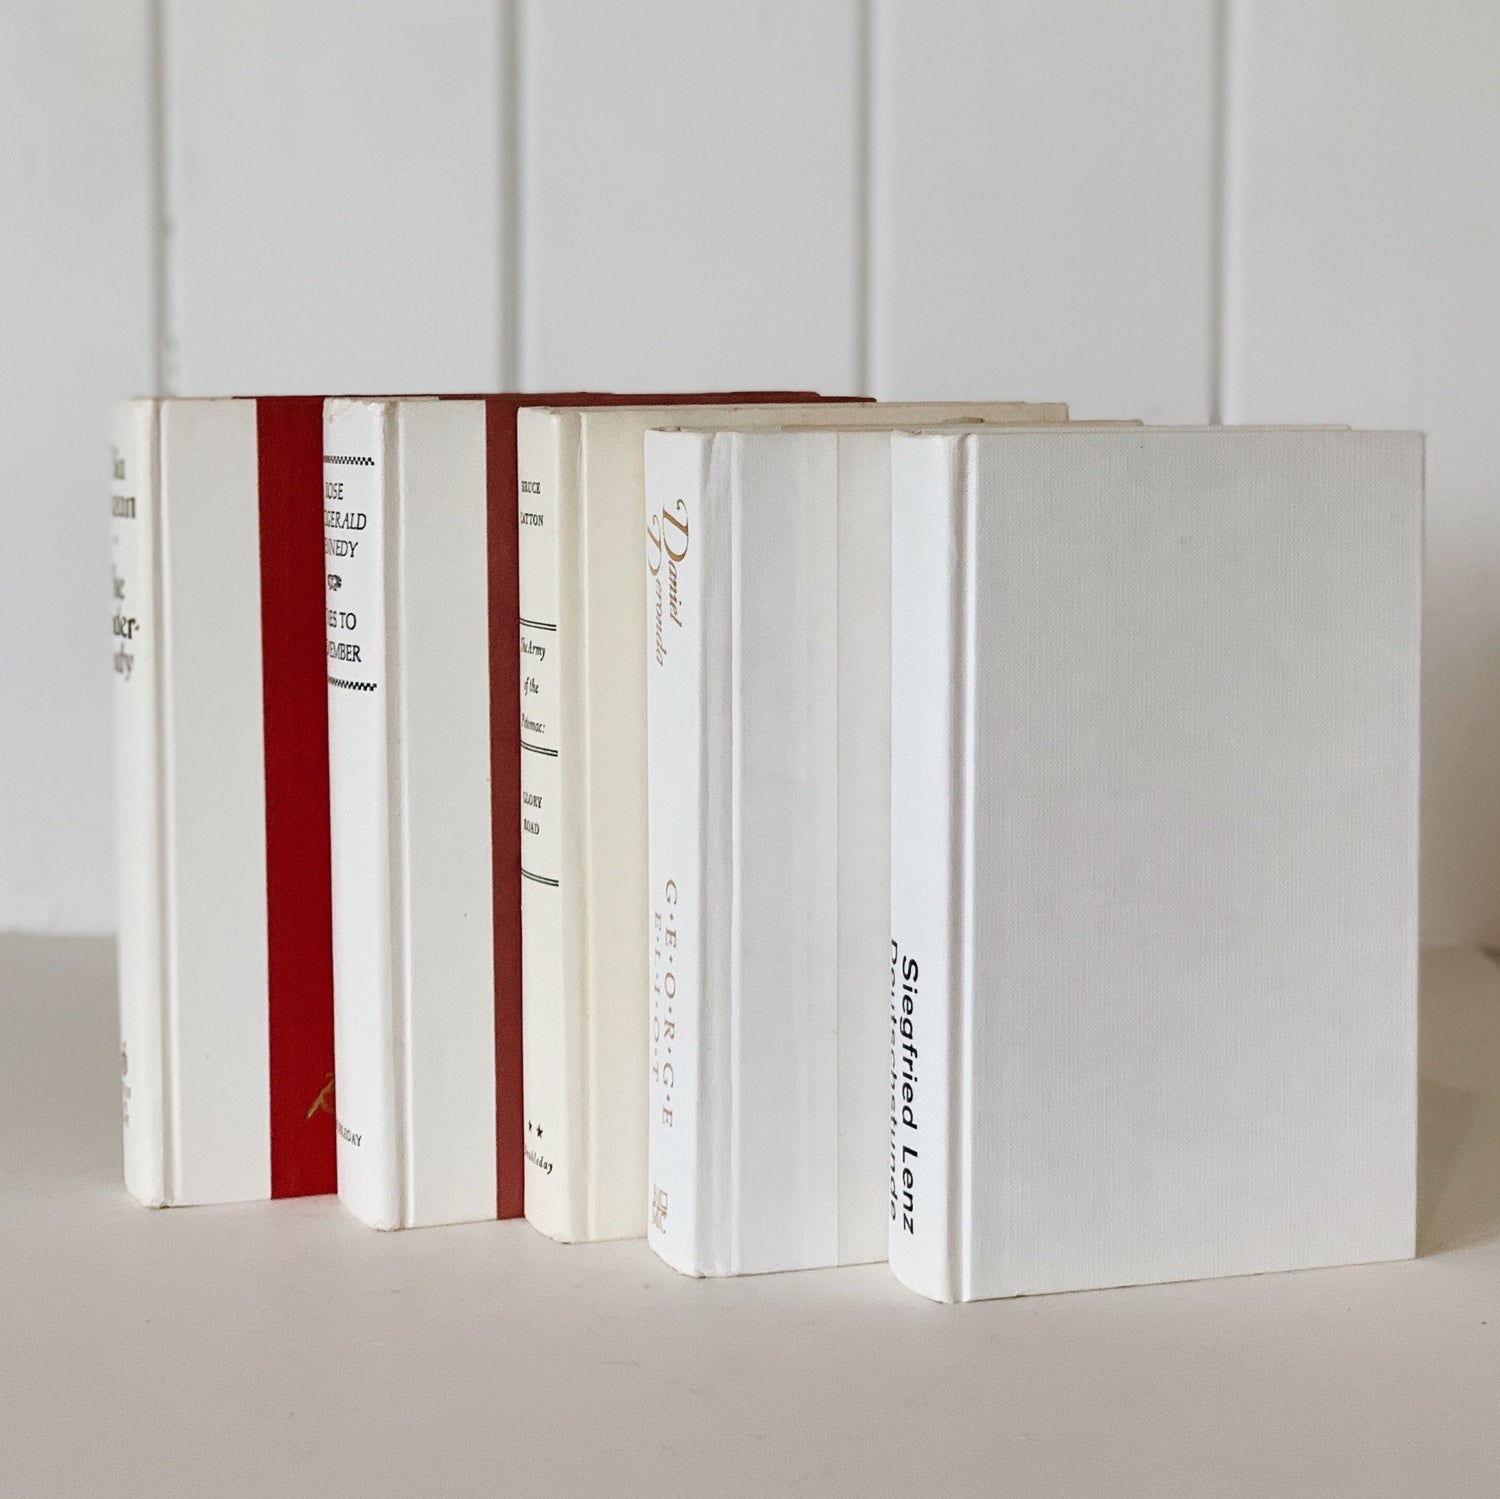 Vintage White Book Set, Bookshelf Decor, Aesthetic Books for Bookshelf Decor